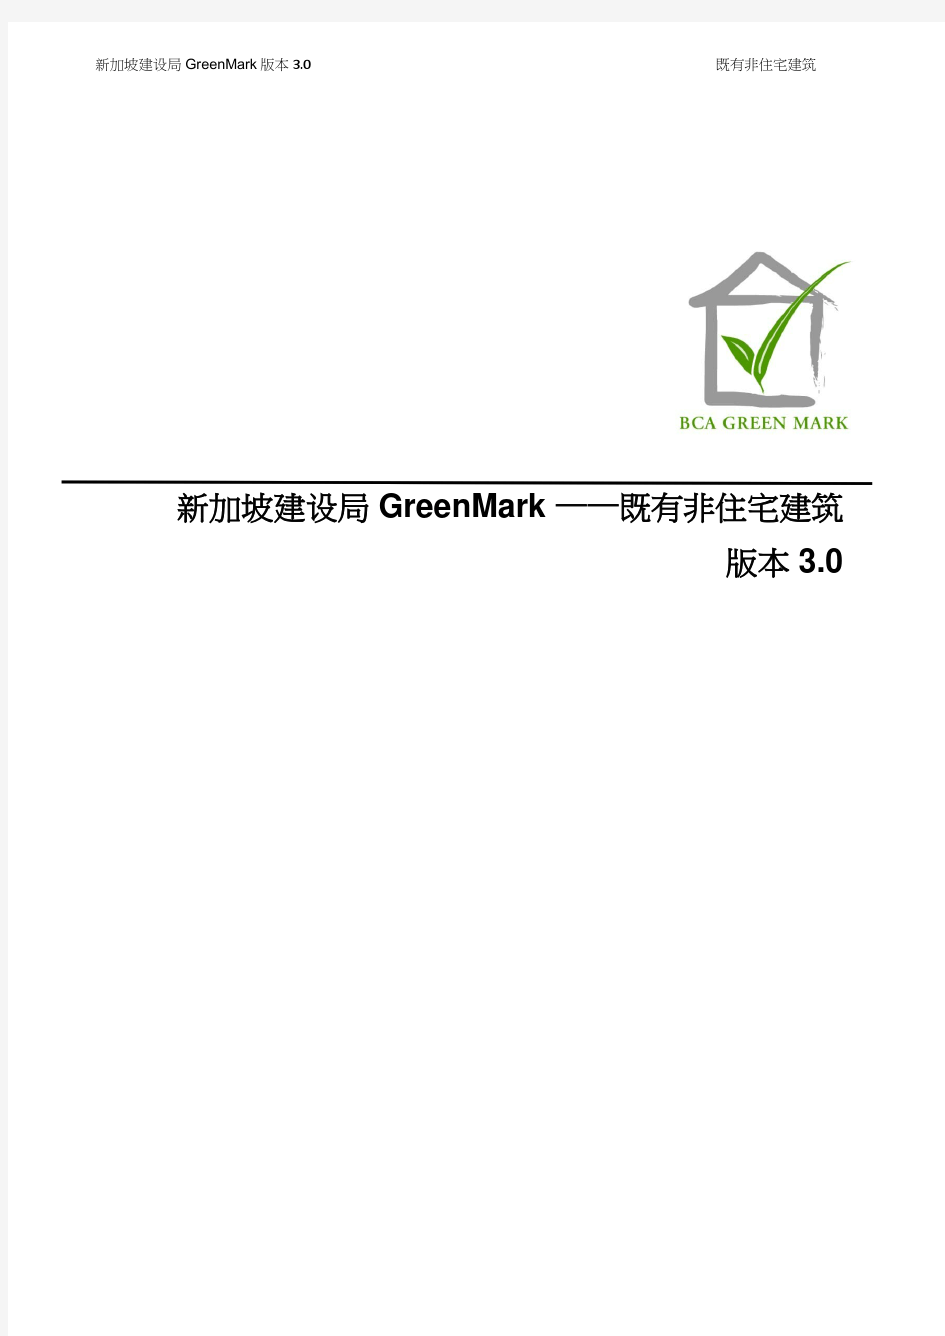 新加坡建设局 GreenMark 版本 30 既有非住宅建筑